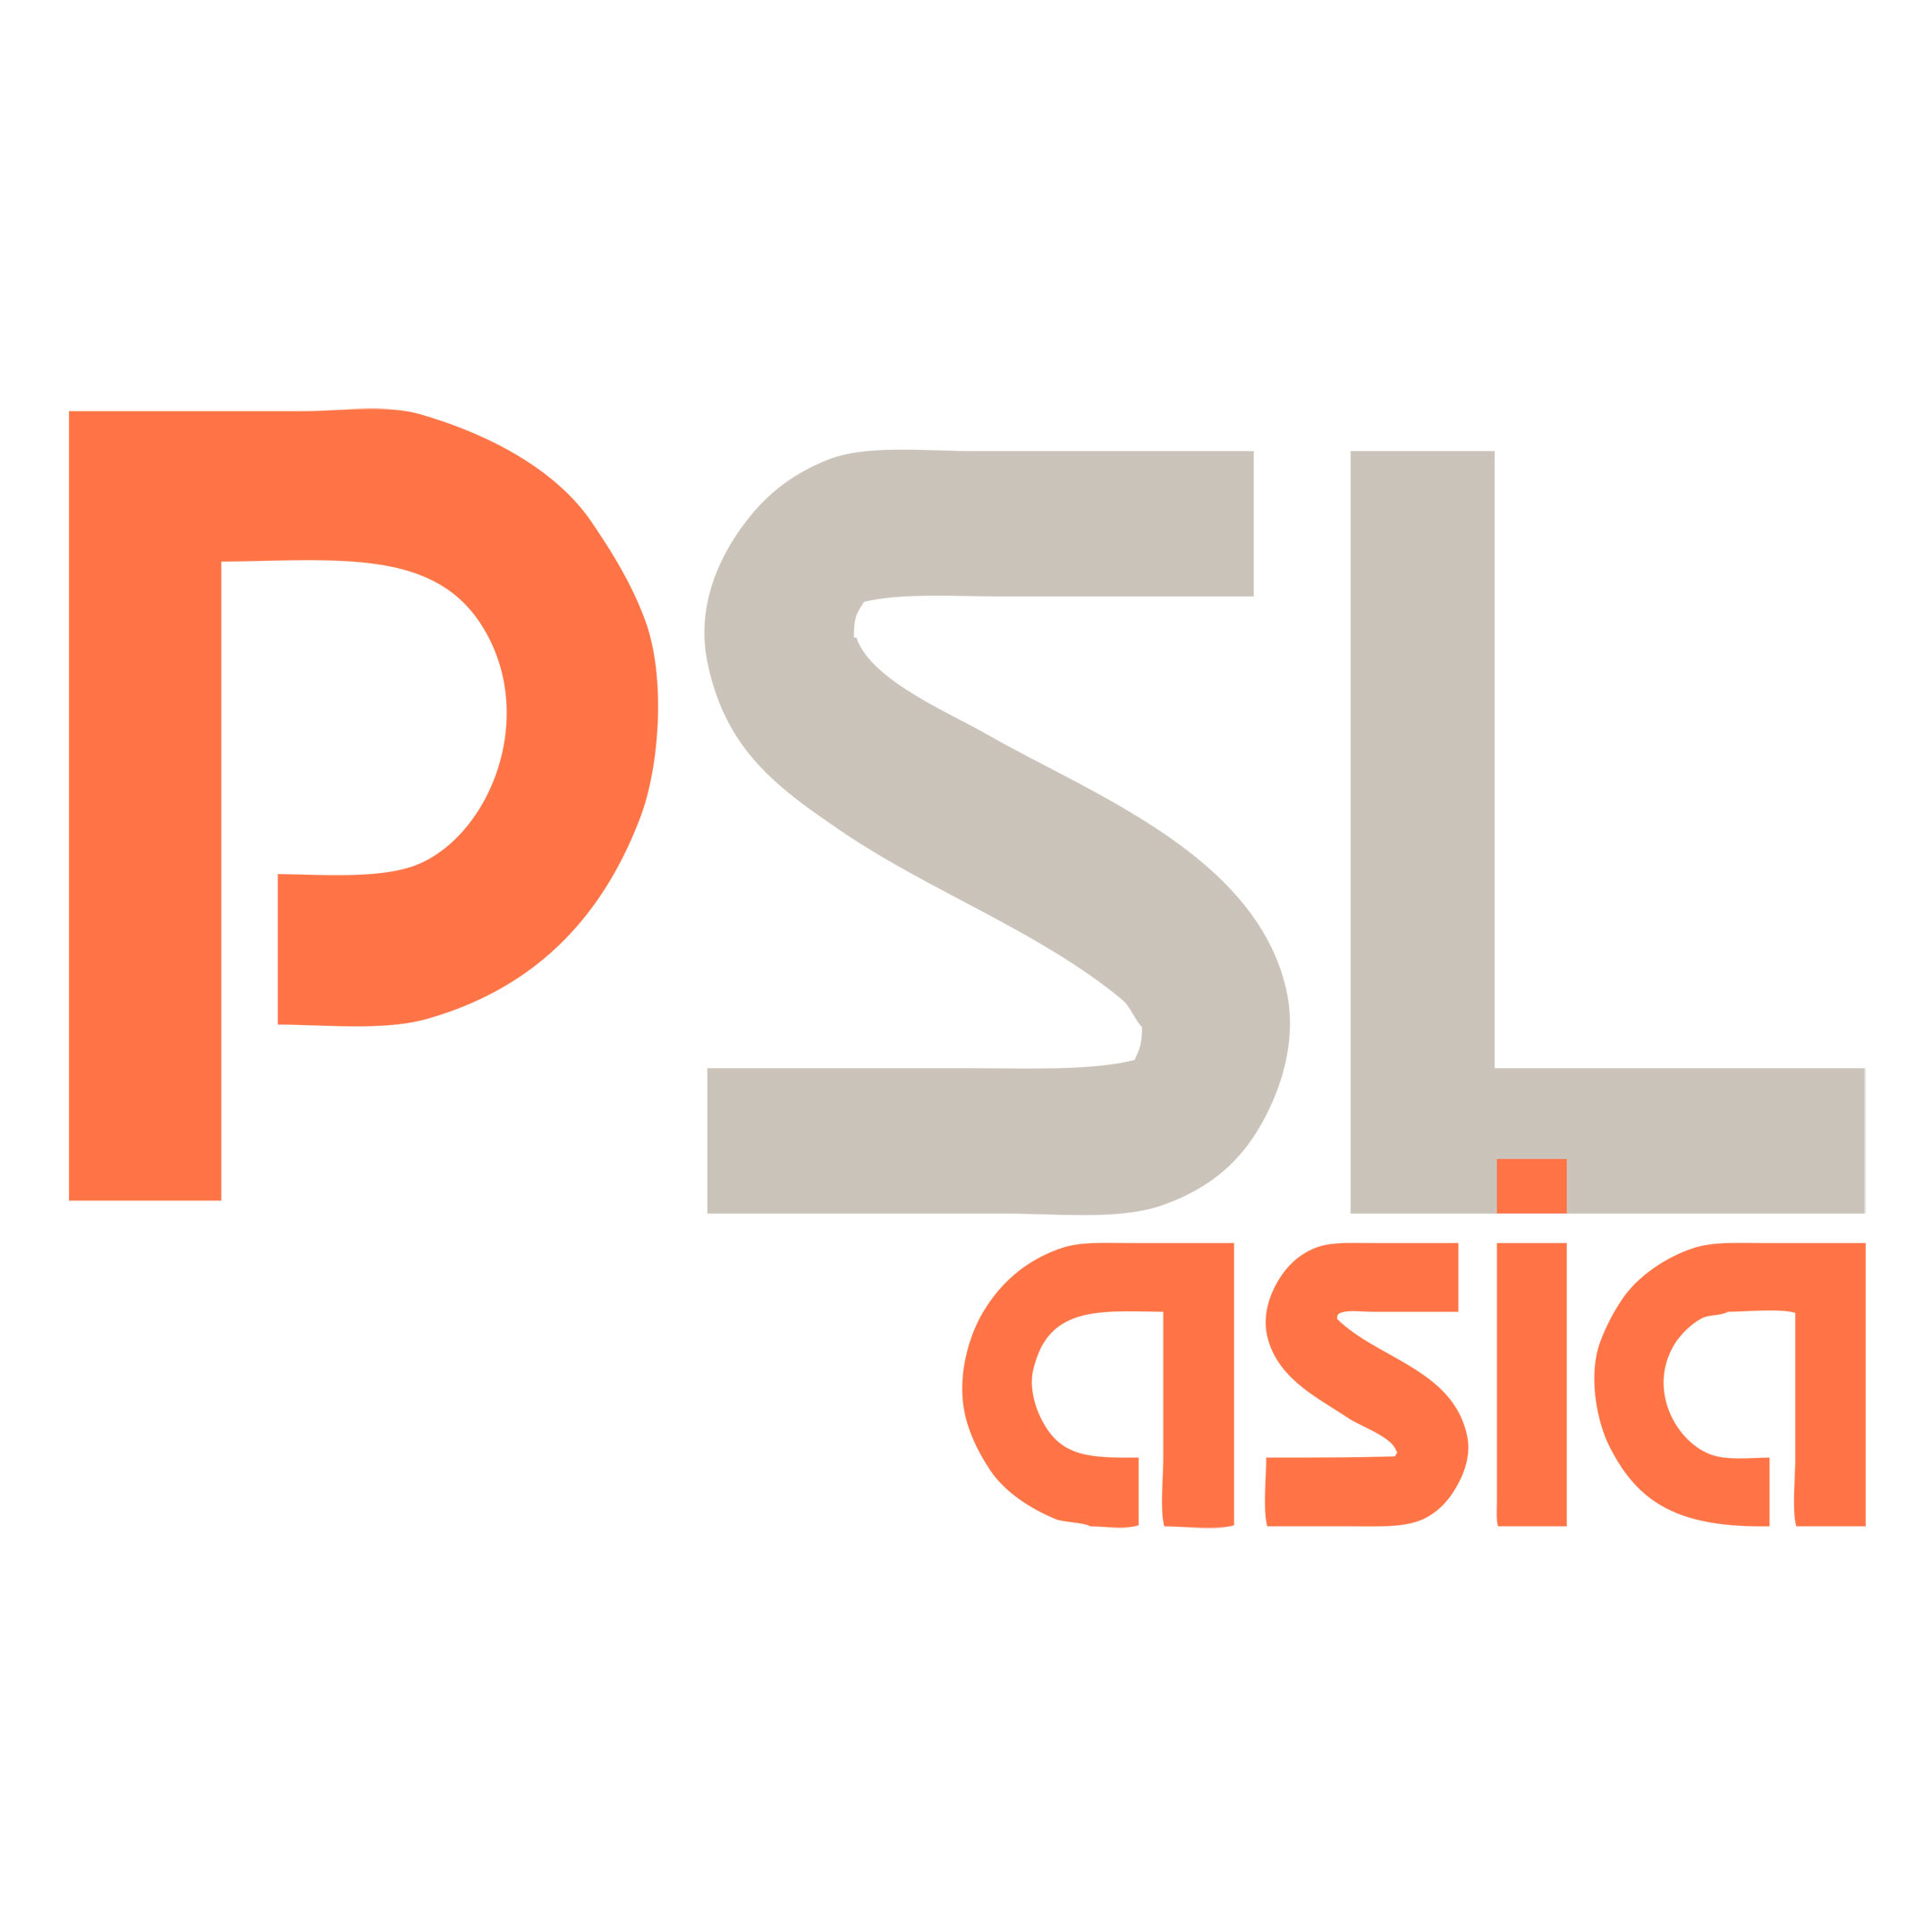 PSL Asia (formerly Ptarmigan)